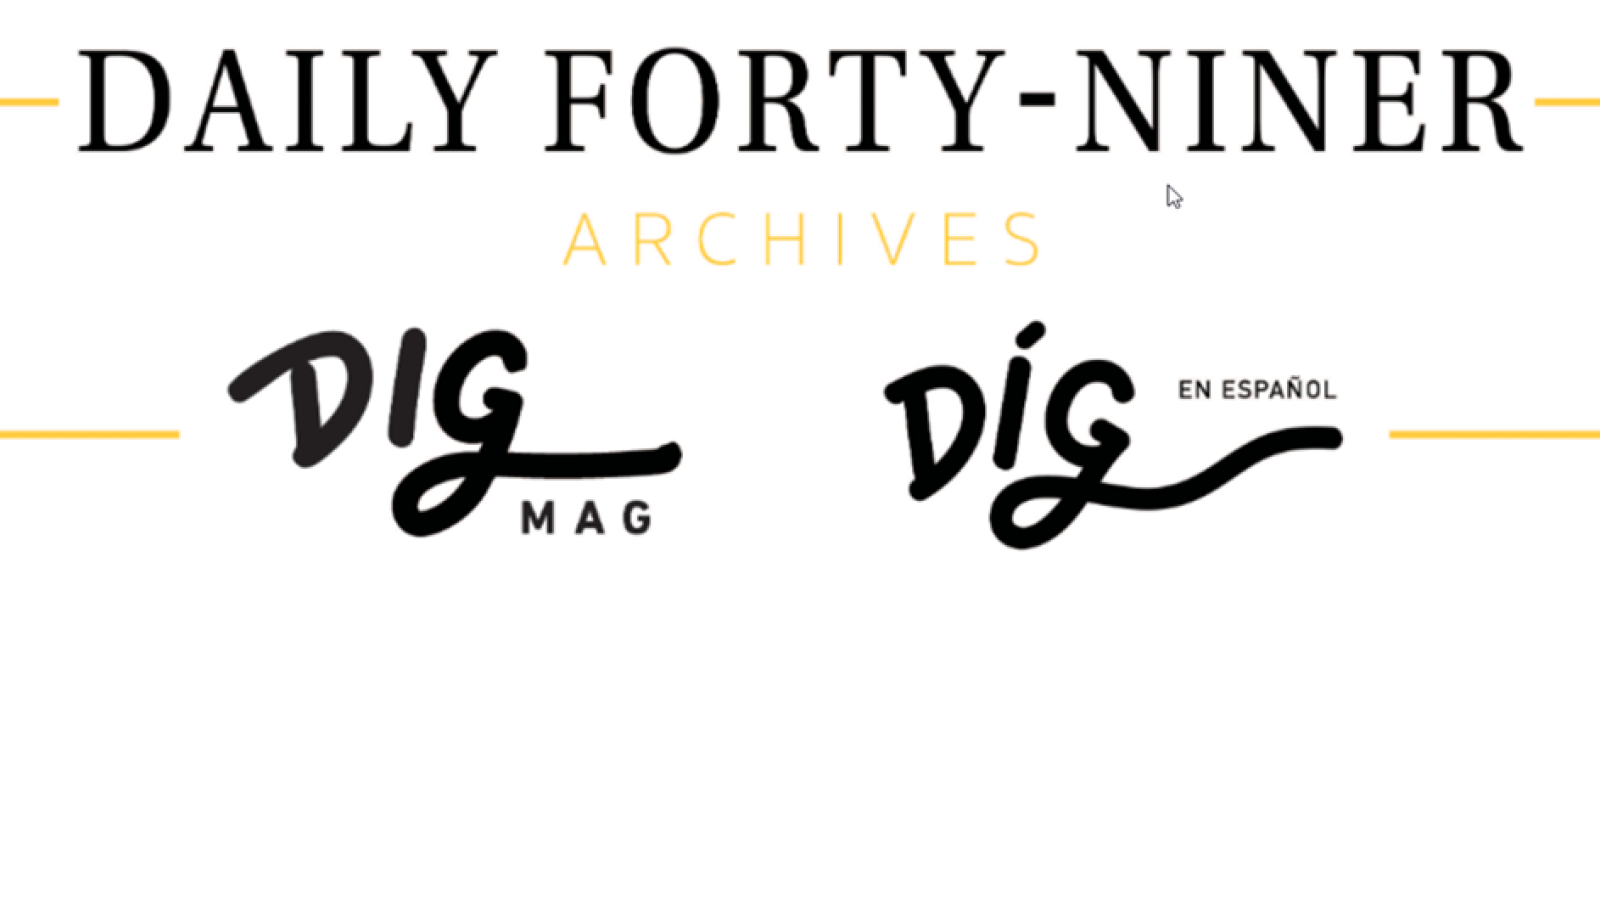 Daily Forty-Niner/DIG Mag/Díg en Español Archive